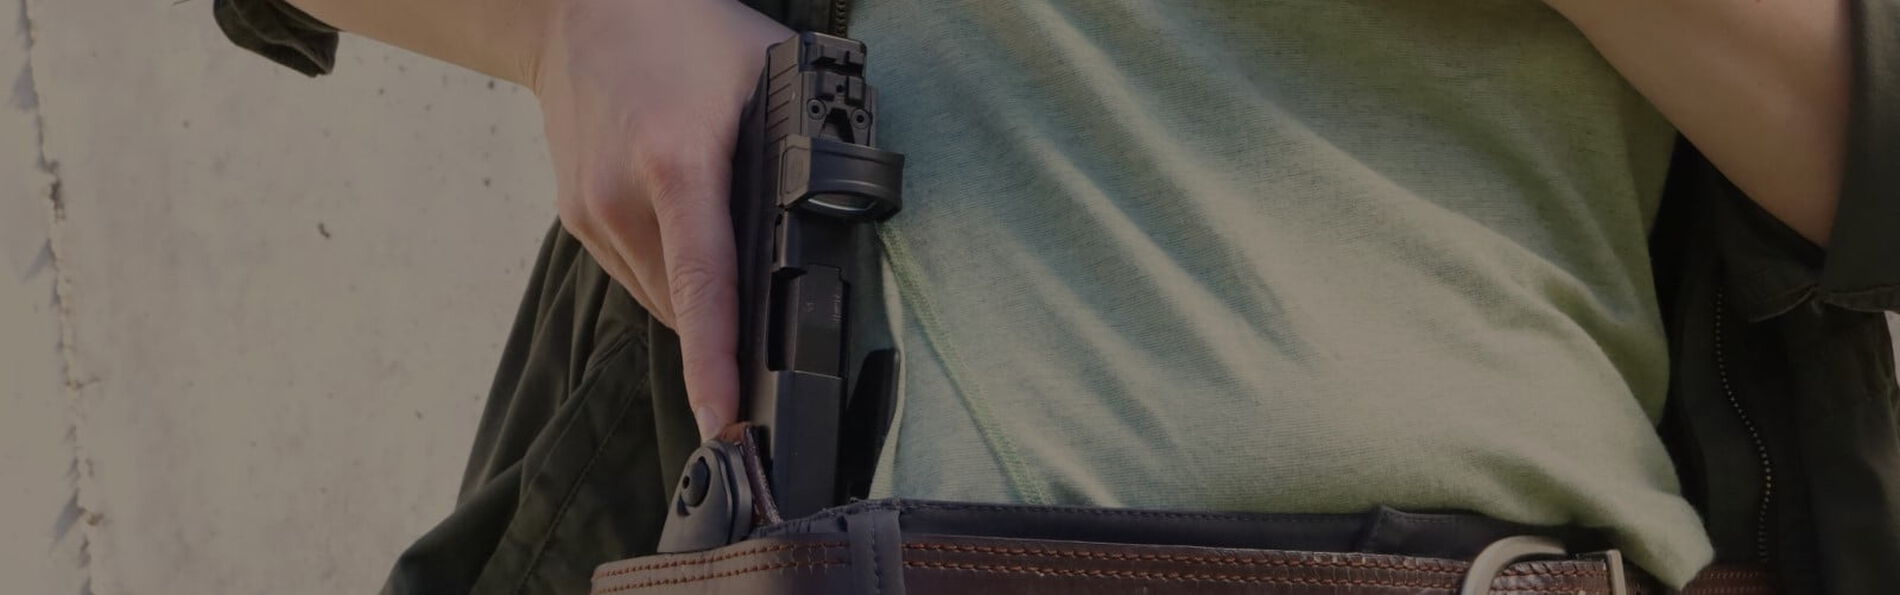 person removing a handgun from a gun holster hiding behind belt loop